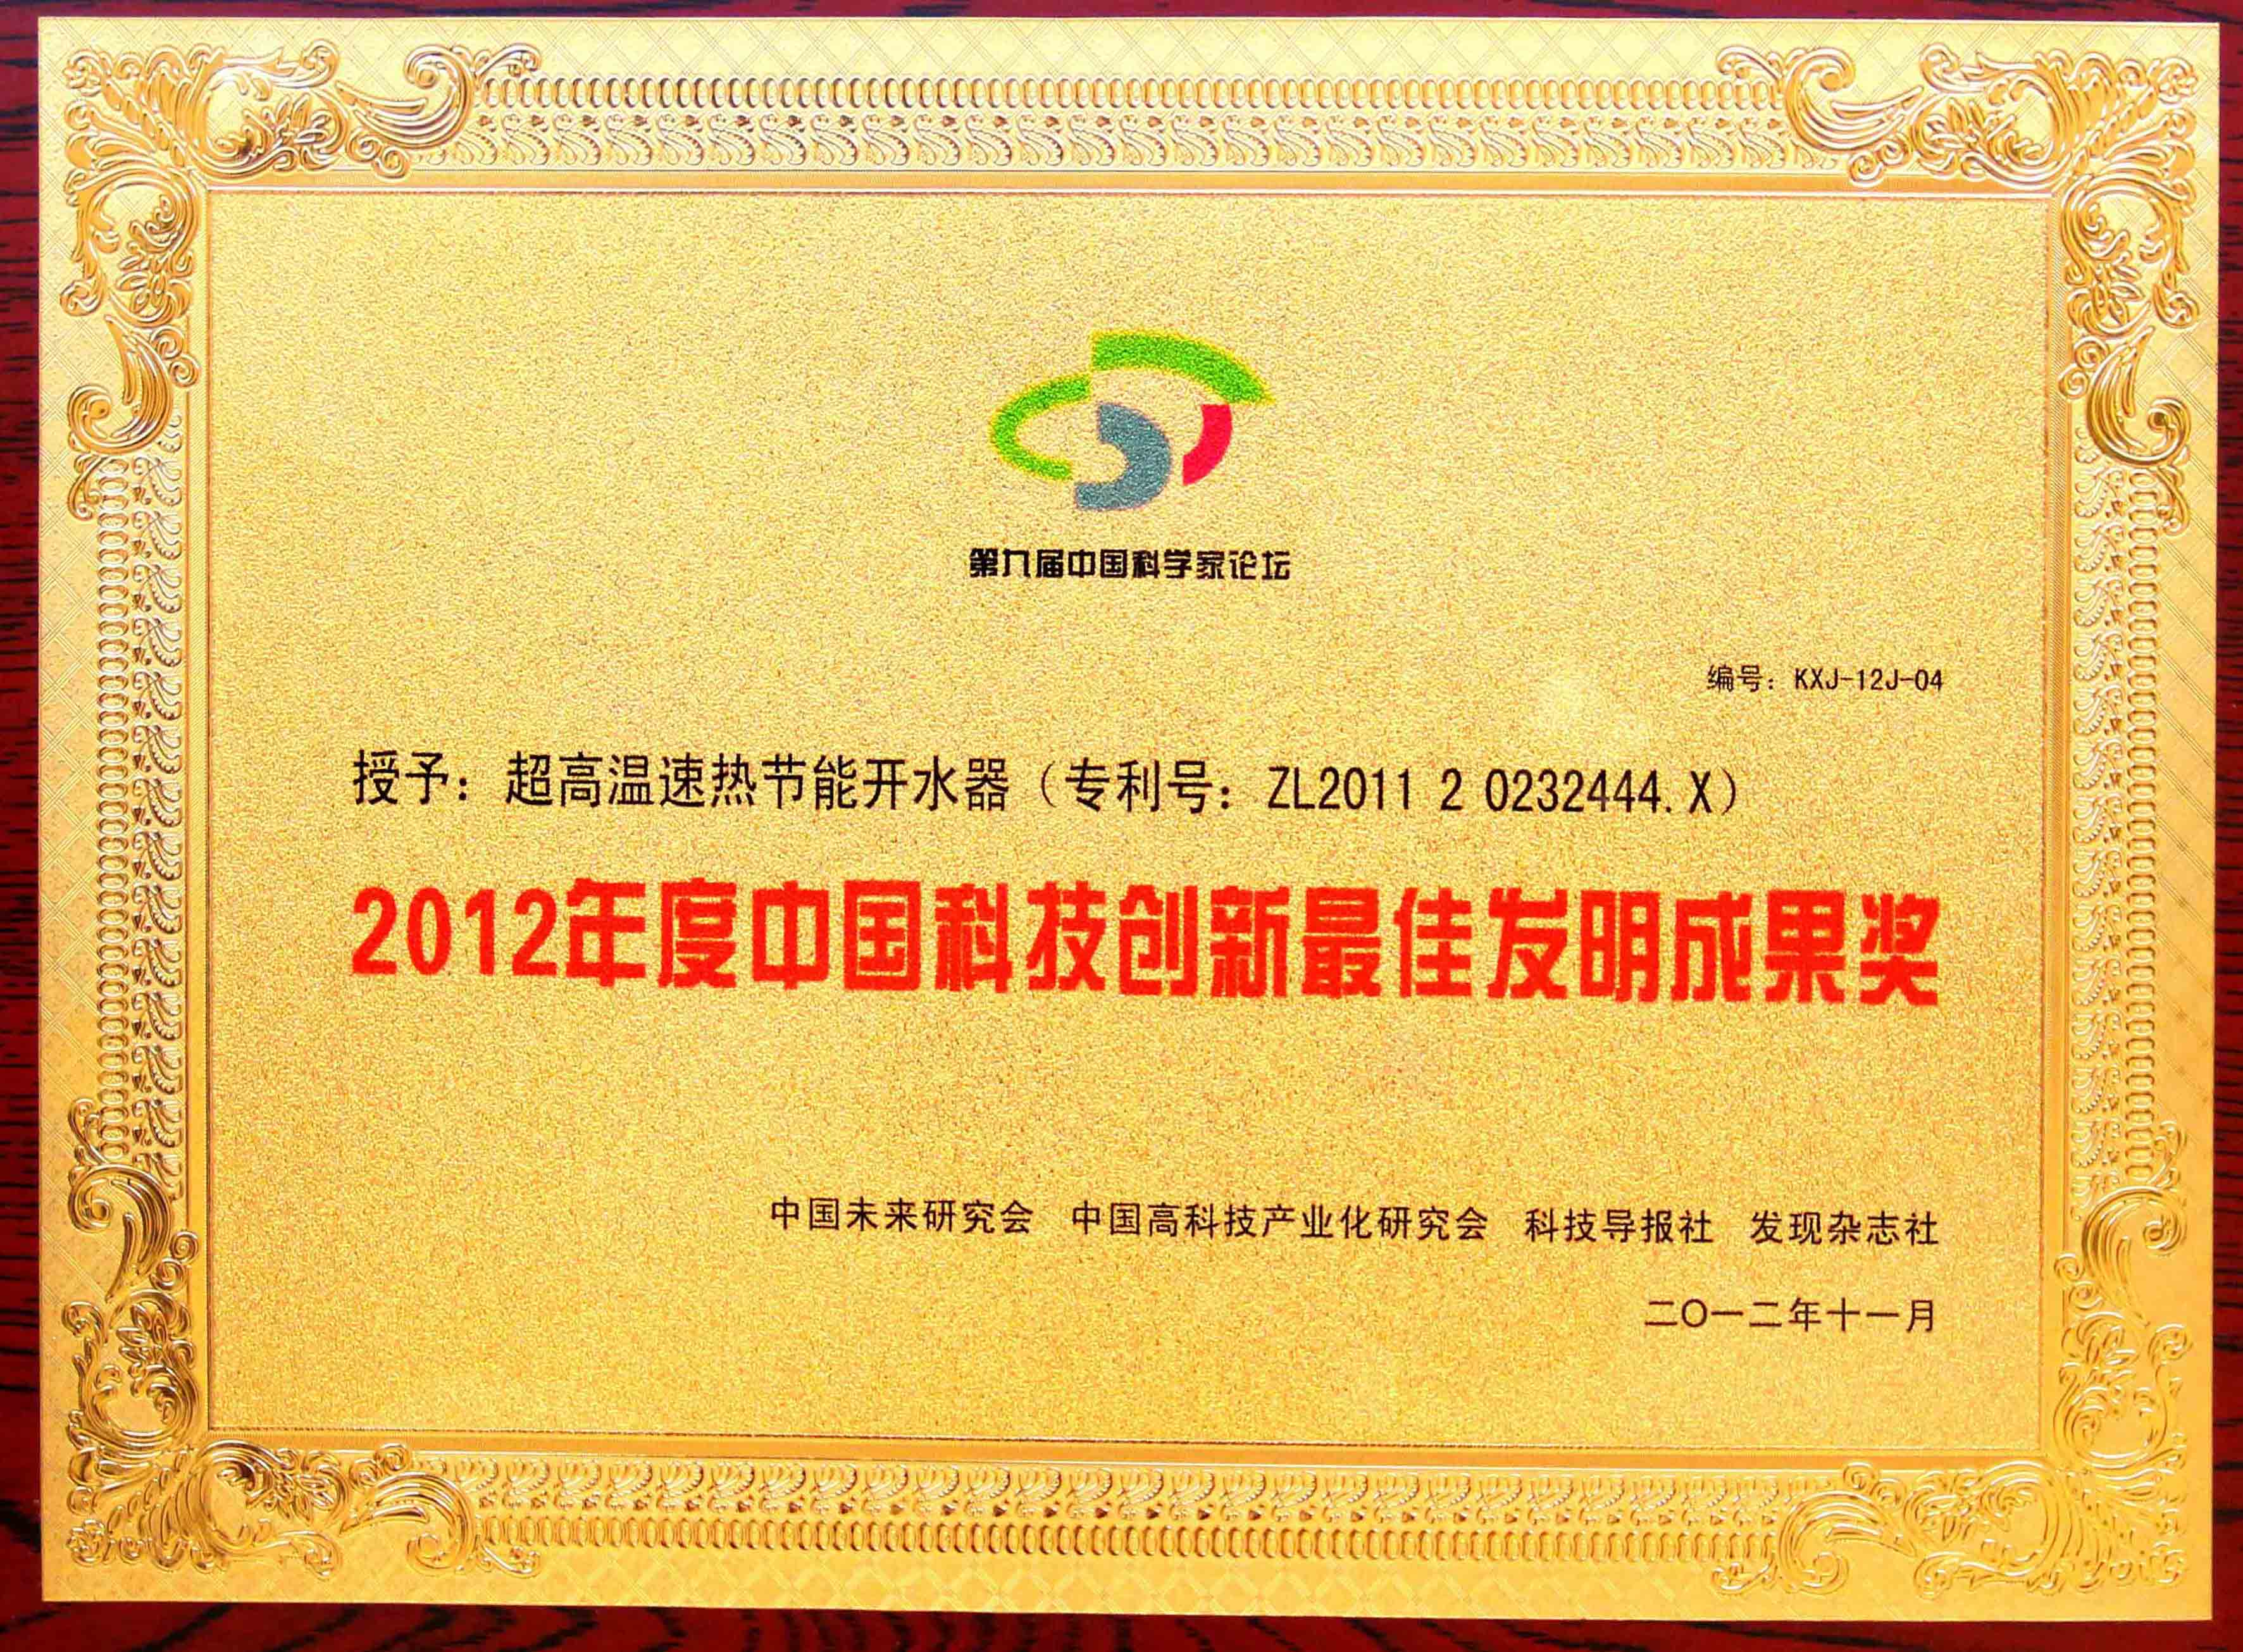 “2012中国科技创新最佳发明成果奖1”为智能对象-1.jpg